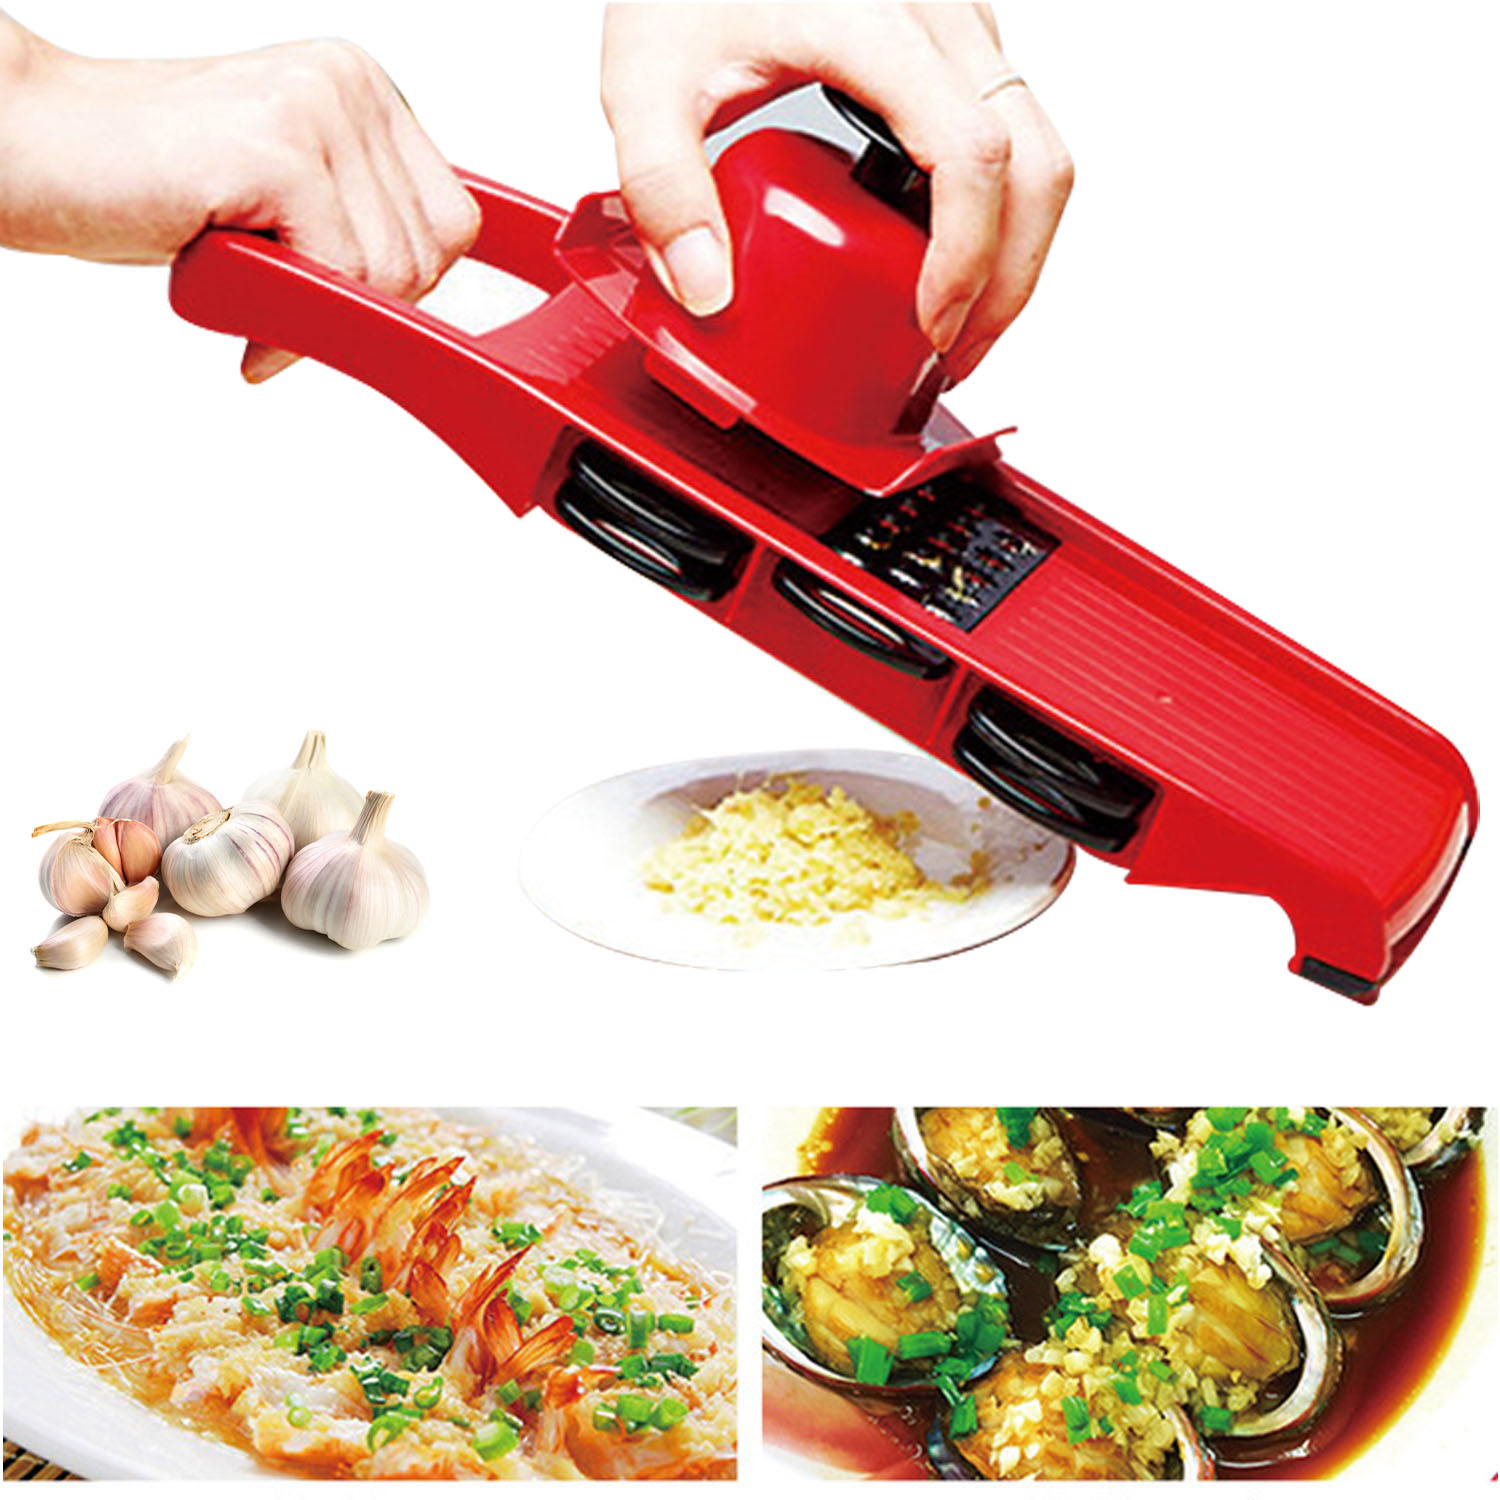 Multifunctional Vegetable Slicer, Kitchen Food Slicer, 6-in-1 Vegetable Manual Grater, Potato Chopper Veggie Spiralizer, Onion & Vegetables Slicer